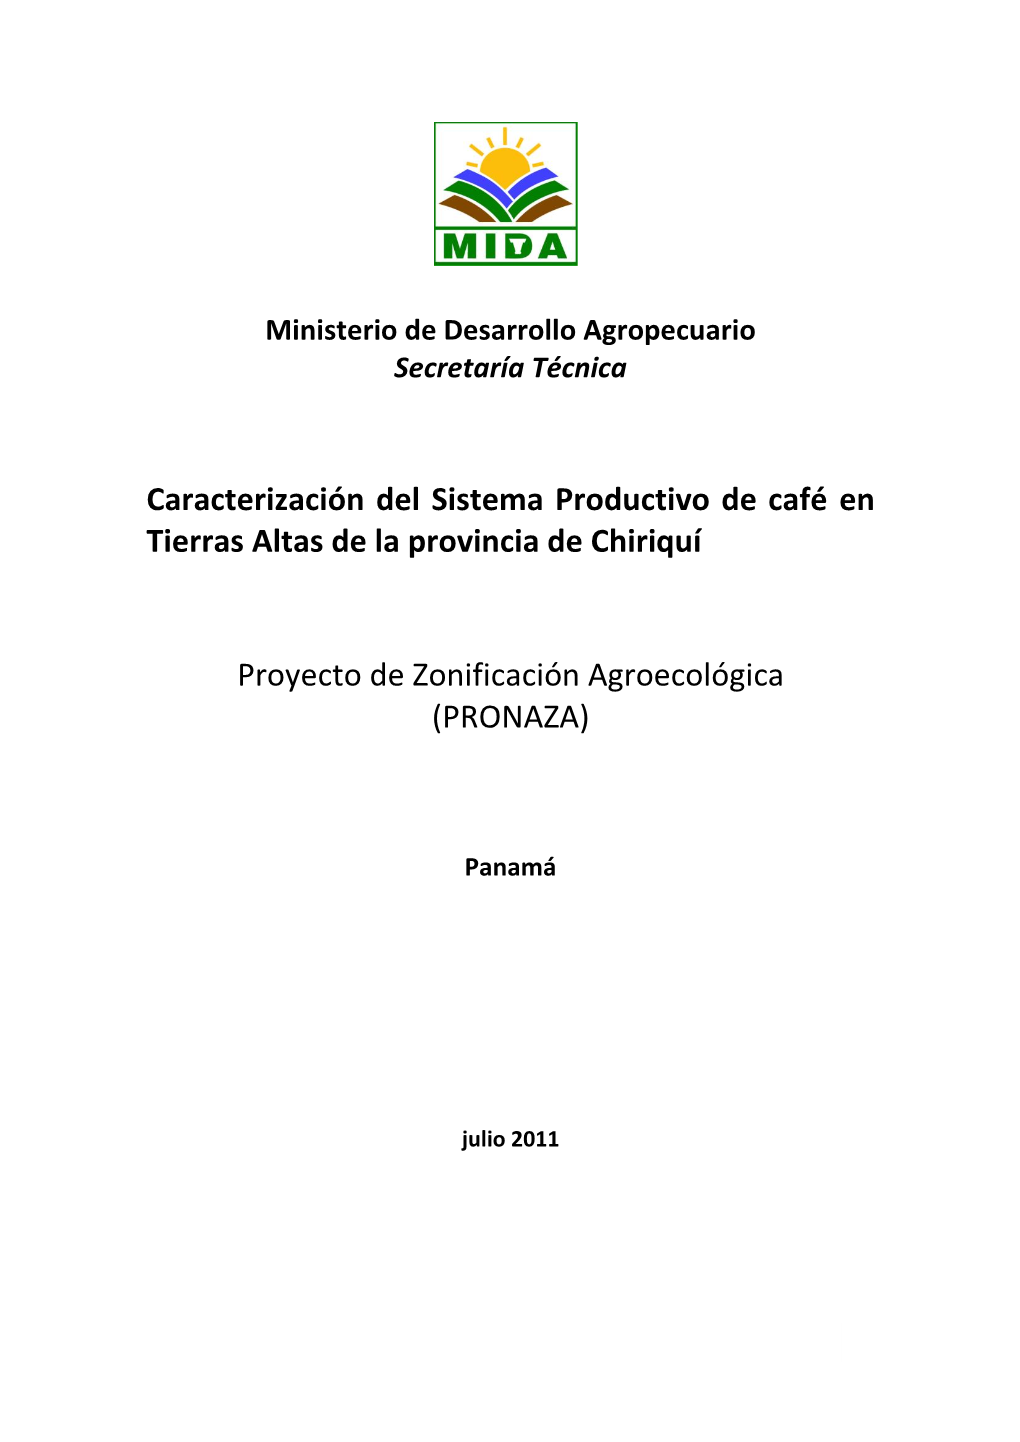 Caracterización Del Sistema Productivo De Café En Tierras Altas De La Provincia De Chiriquí